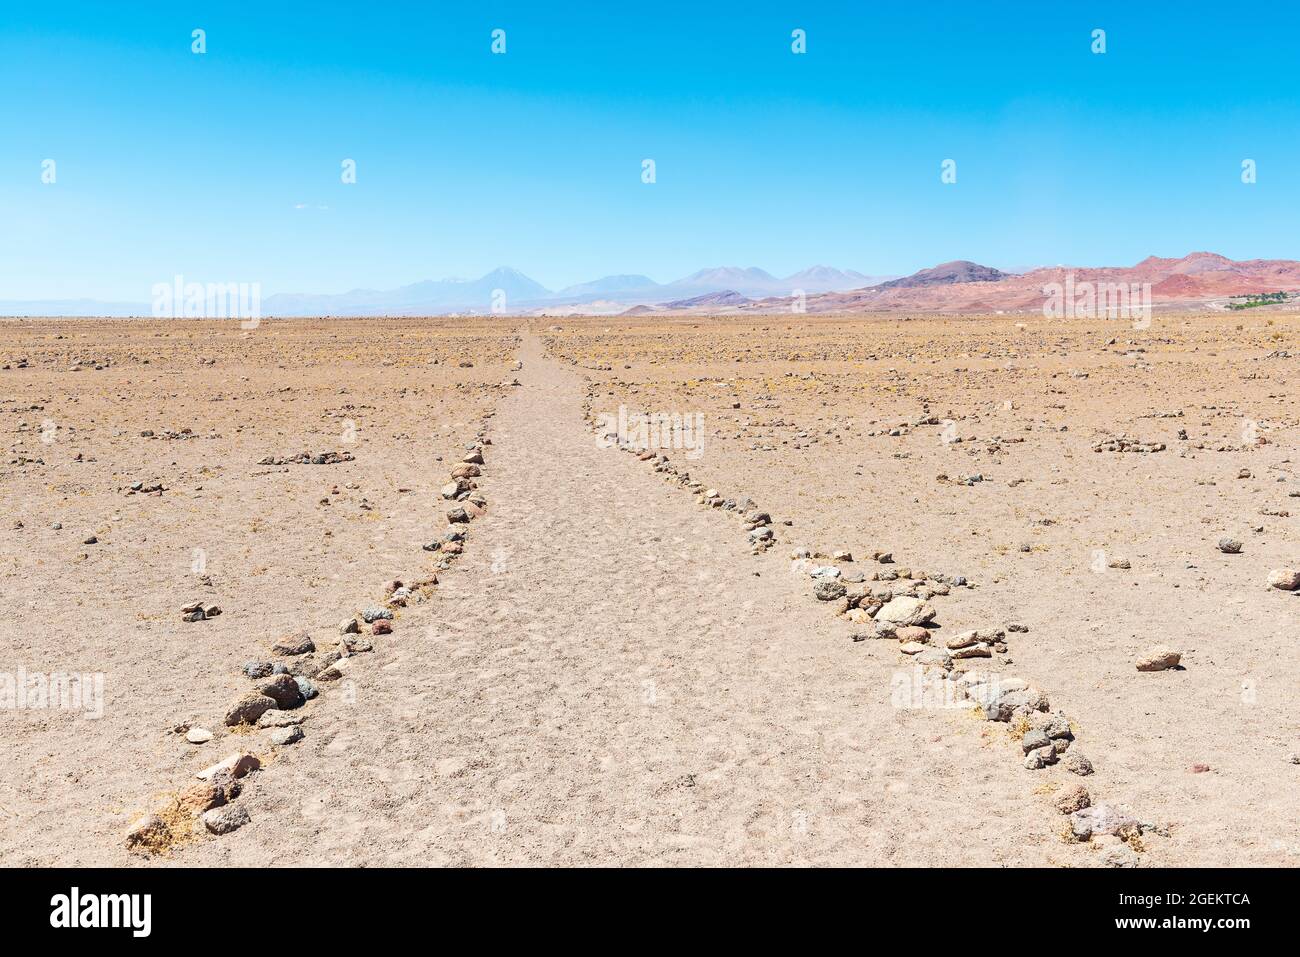 Inca Trail (Qhapaq Ñan in Quechua) path in the Atacama desert, Chile. Stock Photo